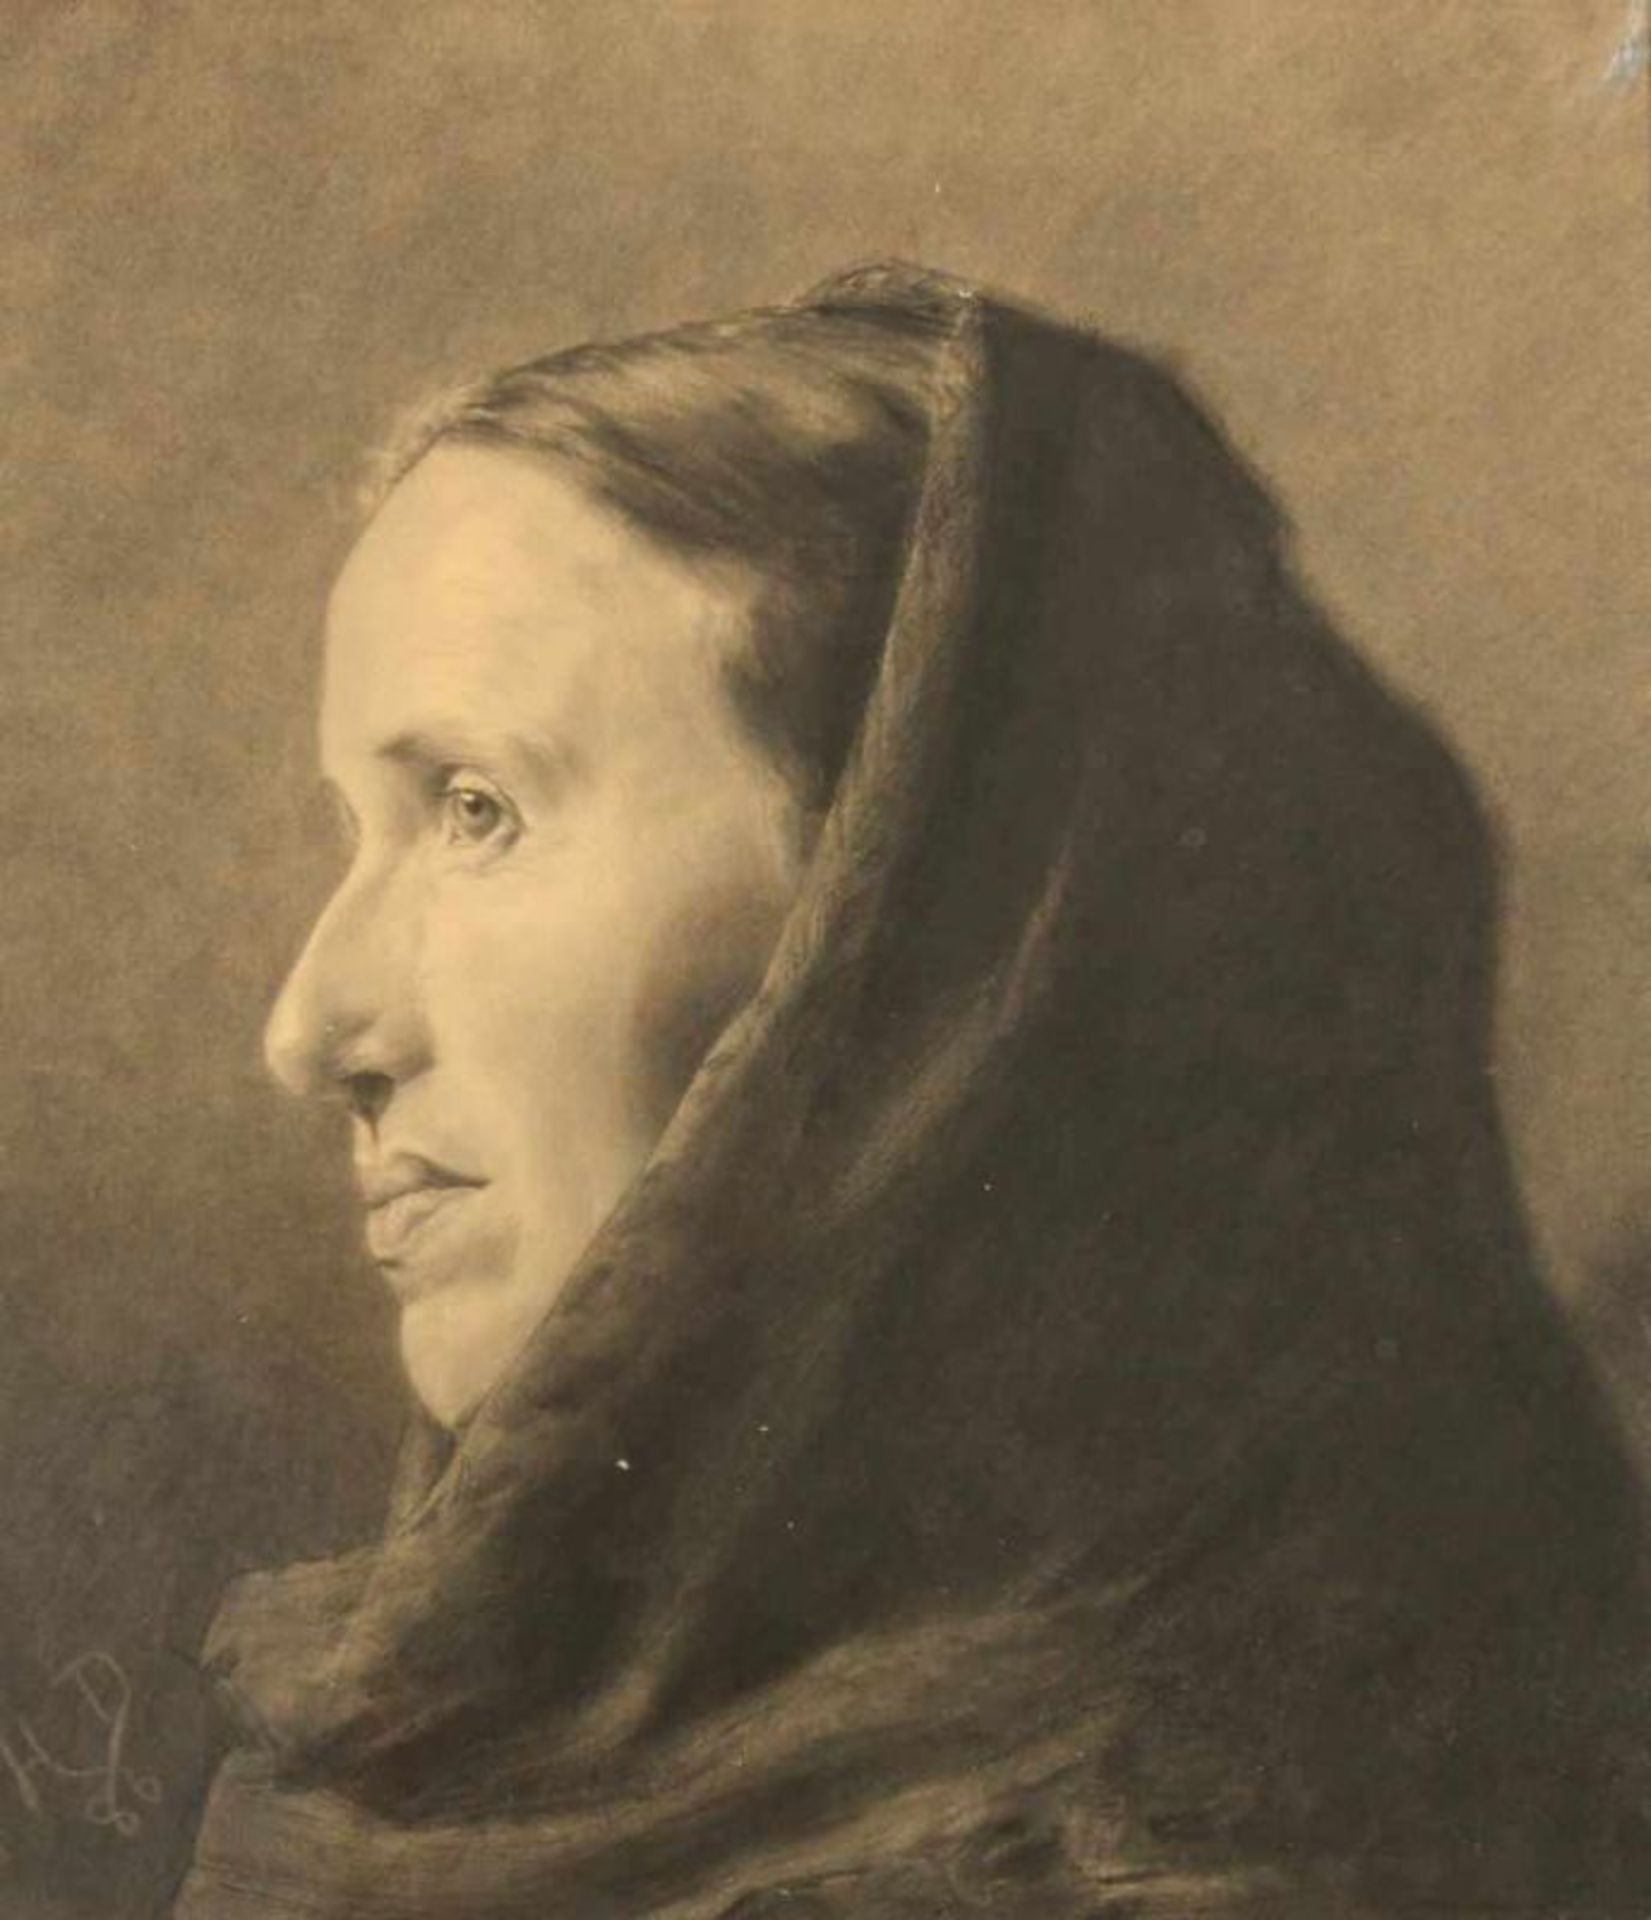 Porträtist (19. Jh.), 2 Kohlezeichnungen, "Frau mit Kopftuch", "Mann mit Kappe", 1x monogrammiert HD